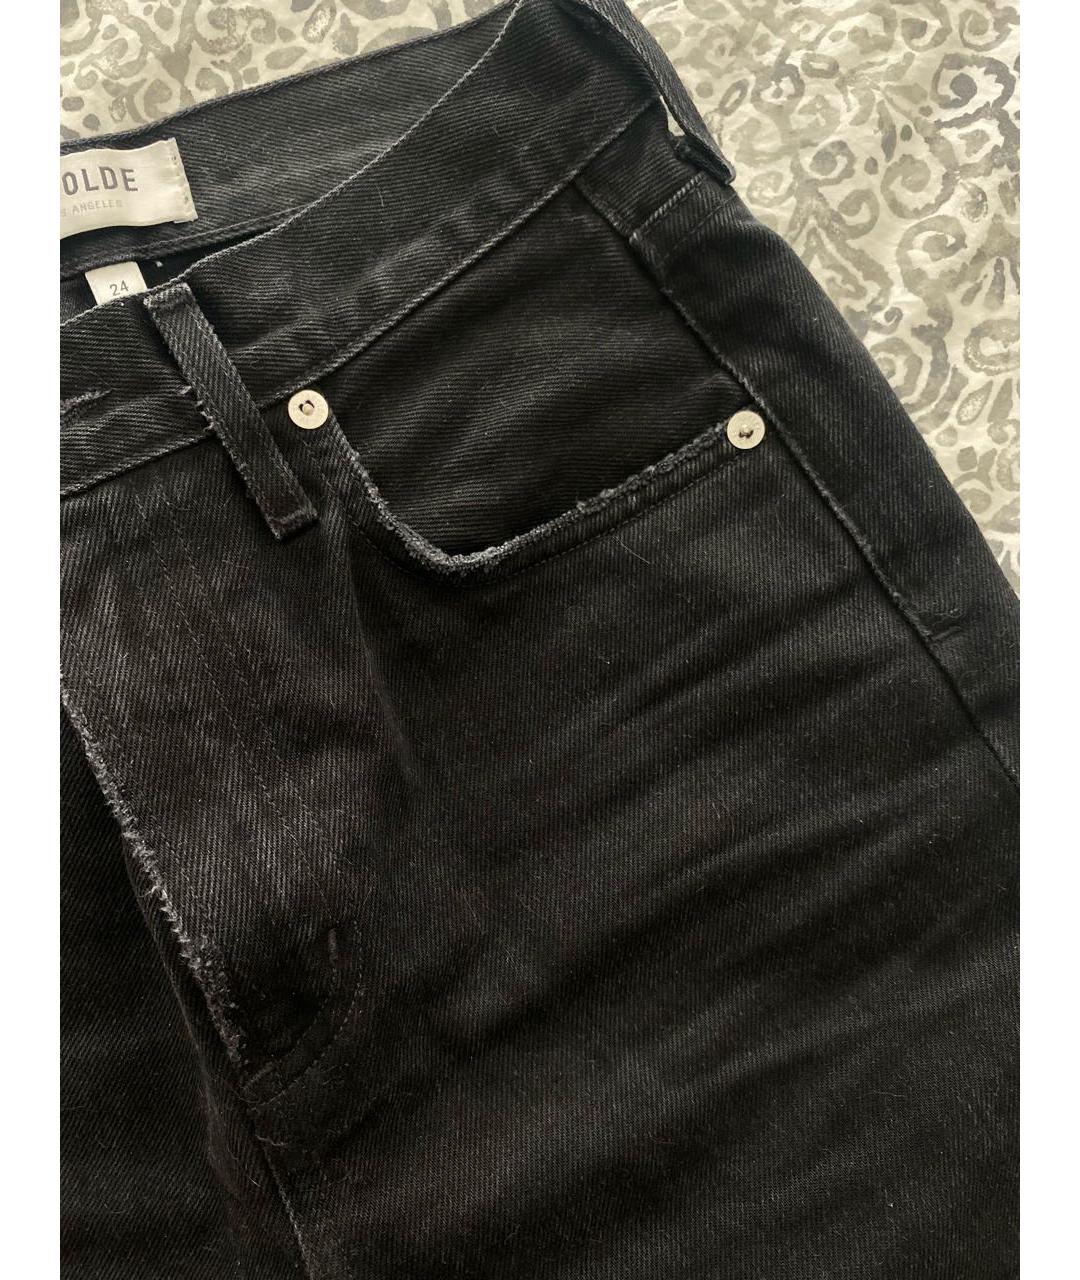 AGOLDE Черные хлопковые прямые джинсы, фото 4